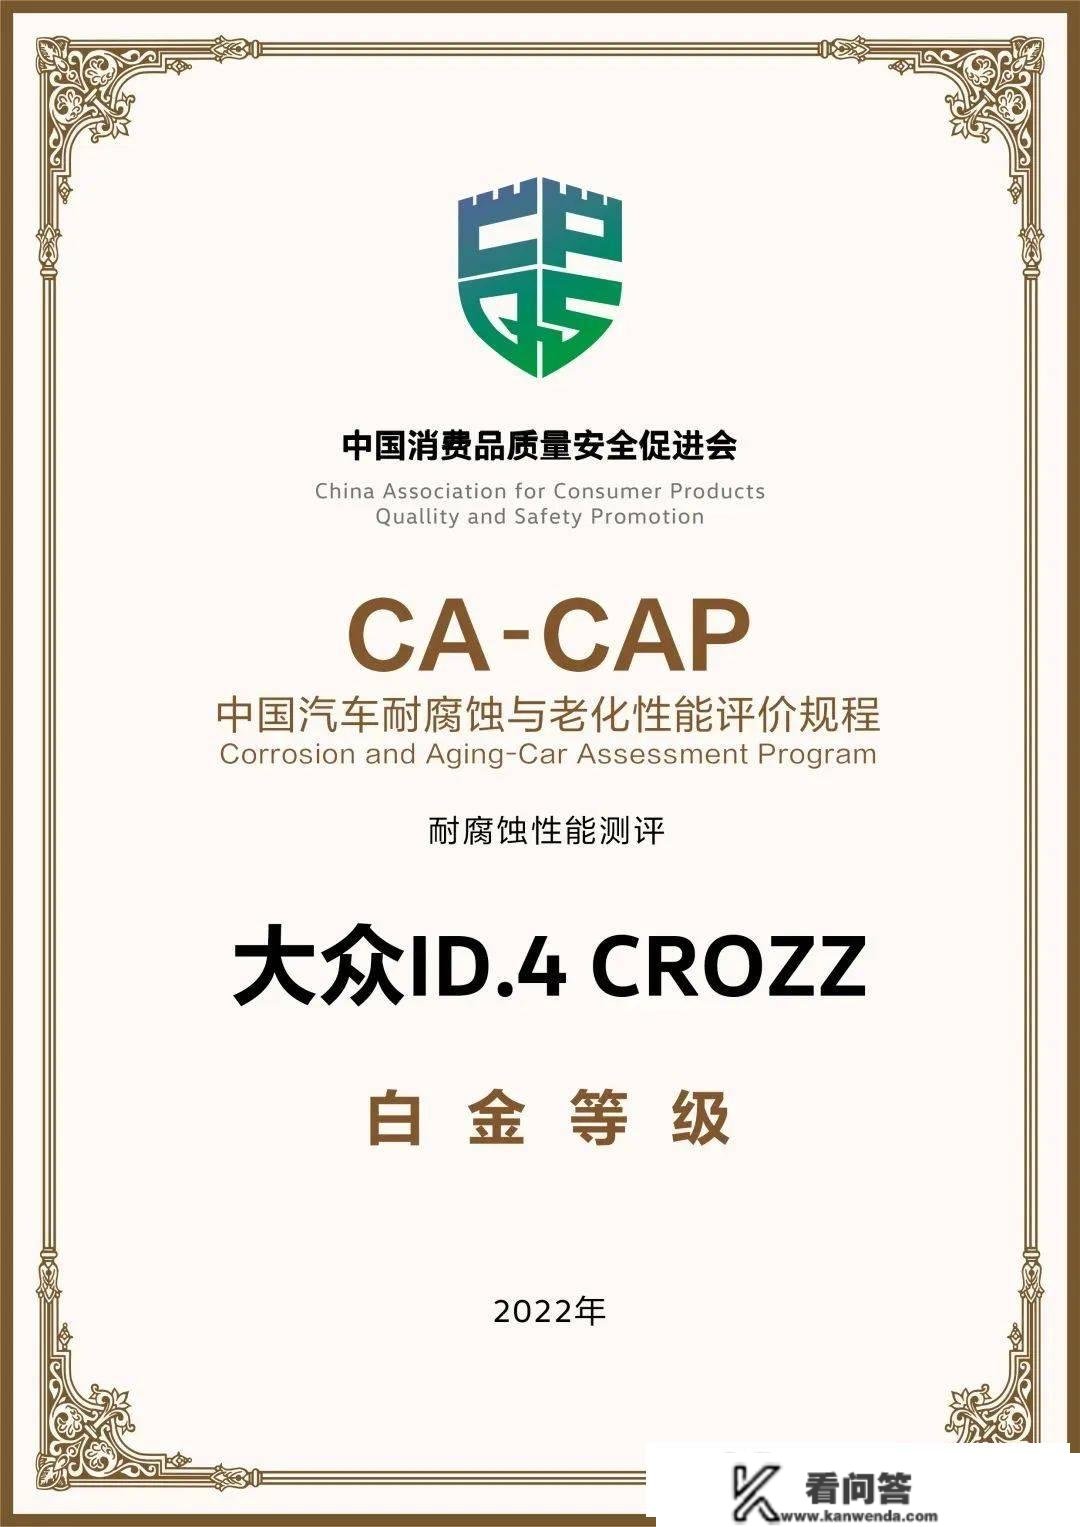 一汽群众ID.4 CROZZ获“CA-CAP耐侵蚀性能测试”白金认证